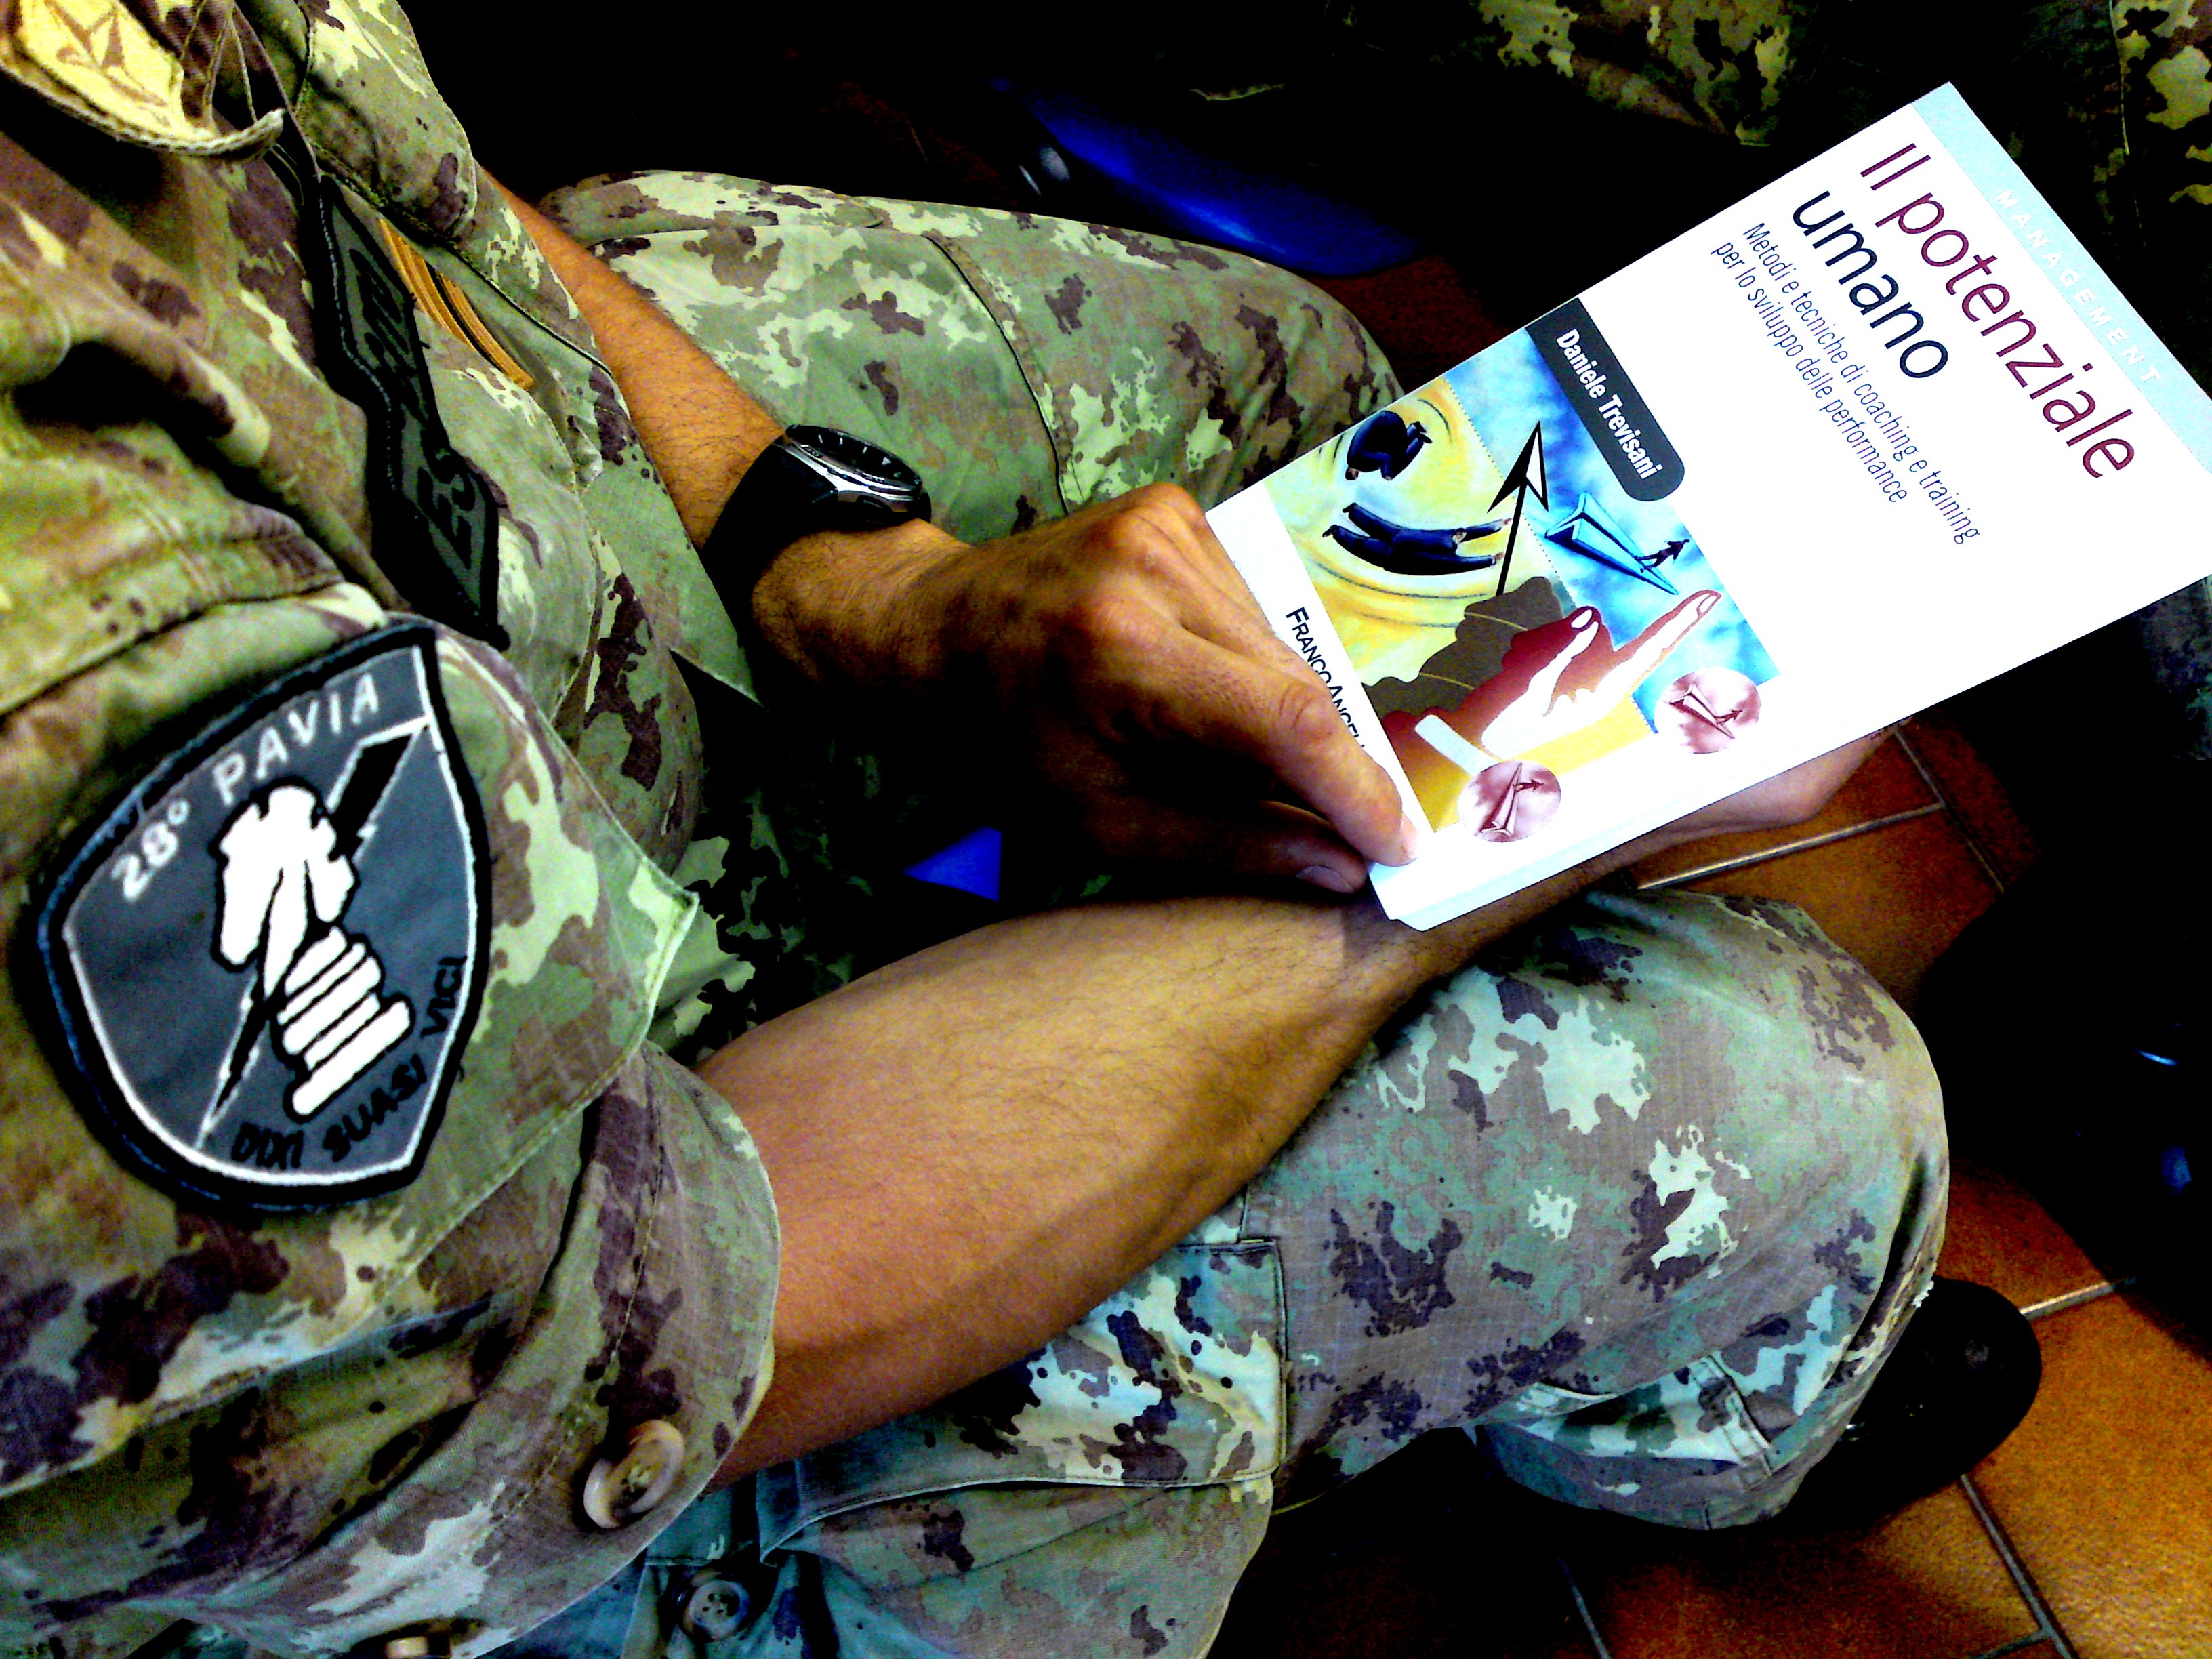 Corso Comunicazione Esercito, libro di testo Il Potenziale Umano di Daniele Trevisani